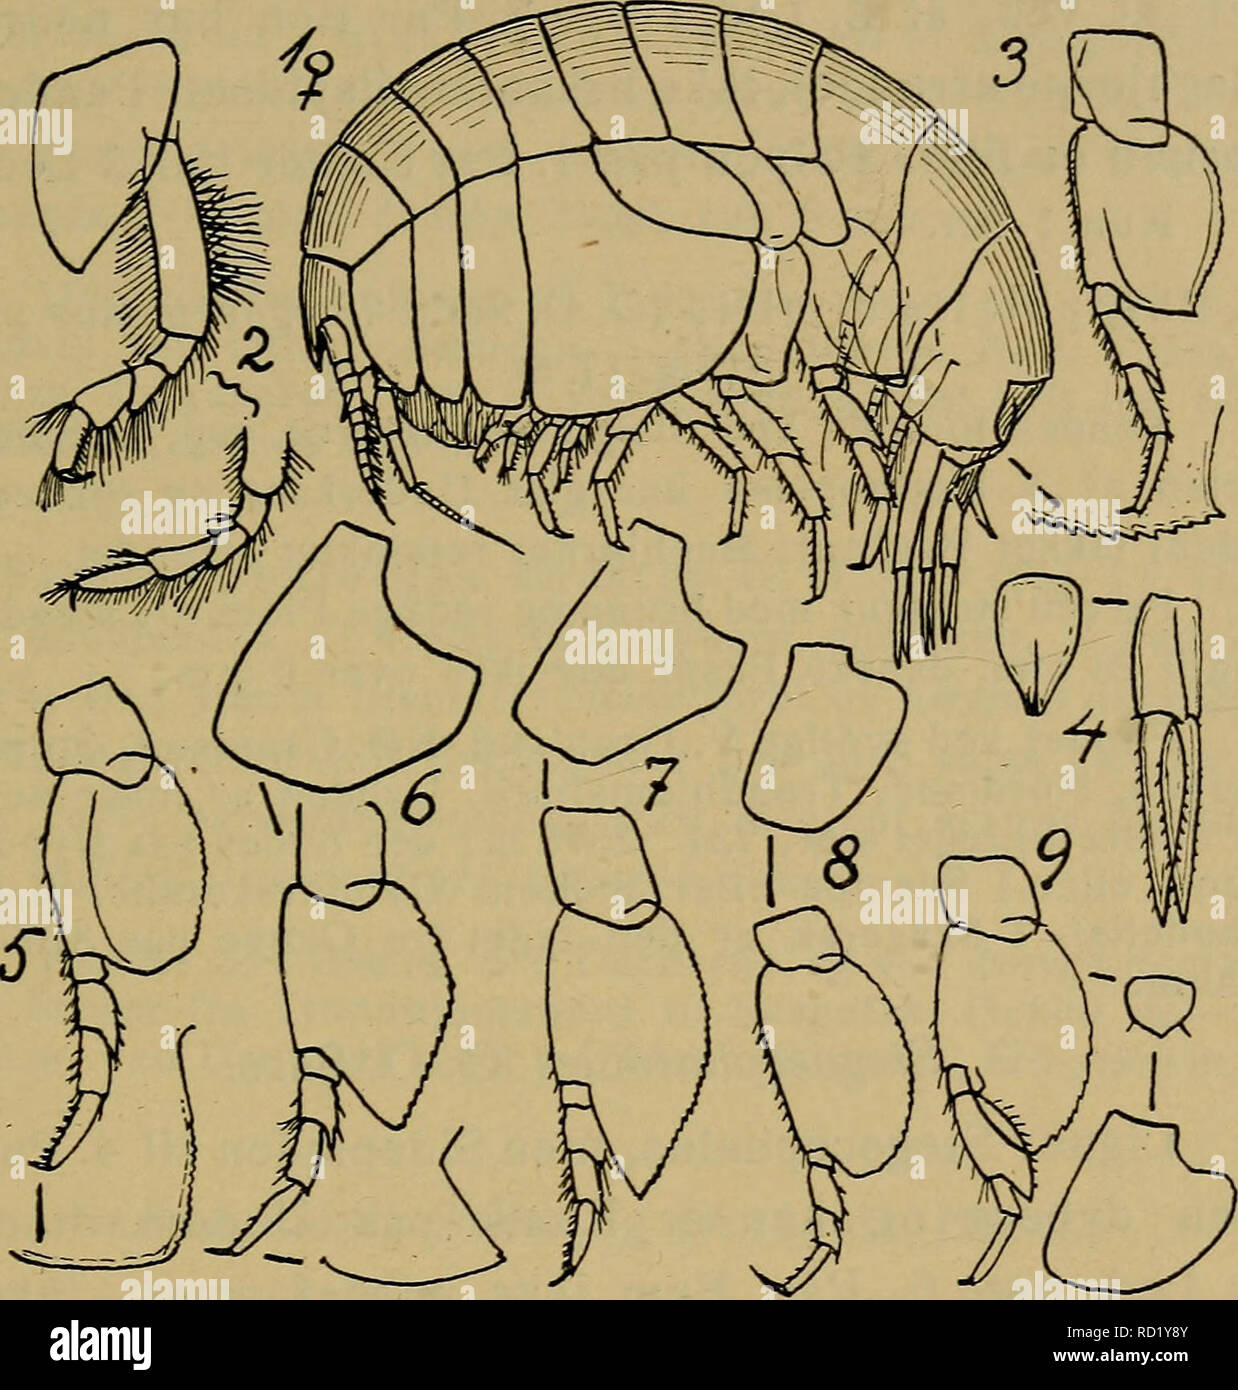 . Danmarks fauna; illustrerede haandbøger over den danske dyreverden... 97 Arten er rimeligvis circumpolar og gaar ikke særlig langt S. f. de arktiske Farvande: i Stillehavet er den dog taget ved Japan, og i Atlanterhavet er Grænsen Massa-. Fig. 17. 1—4: Stegocephalus inflatus (to første Par Ben, 7. Ben, 3. Halefod og Haleplade). — 5: Phippsiella similis (7. Ben, 3. Bag- kropsled). — 6: Stegocephaloides christianiensis (Sidepladen til .4. Ben, 7. Ben, 3. Bagkropsled). — 7: St. auratus (Sidepladen til 4. Ben, 7. Ben). — 8: Andaniexis abyssi (samme Lemmer). — 9: Andani- opsis nordlandica (samme  Stock Photo